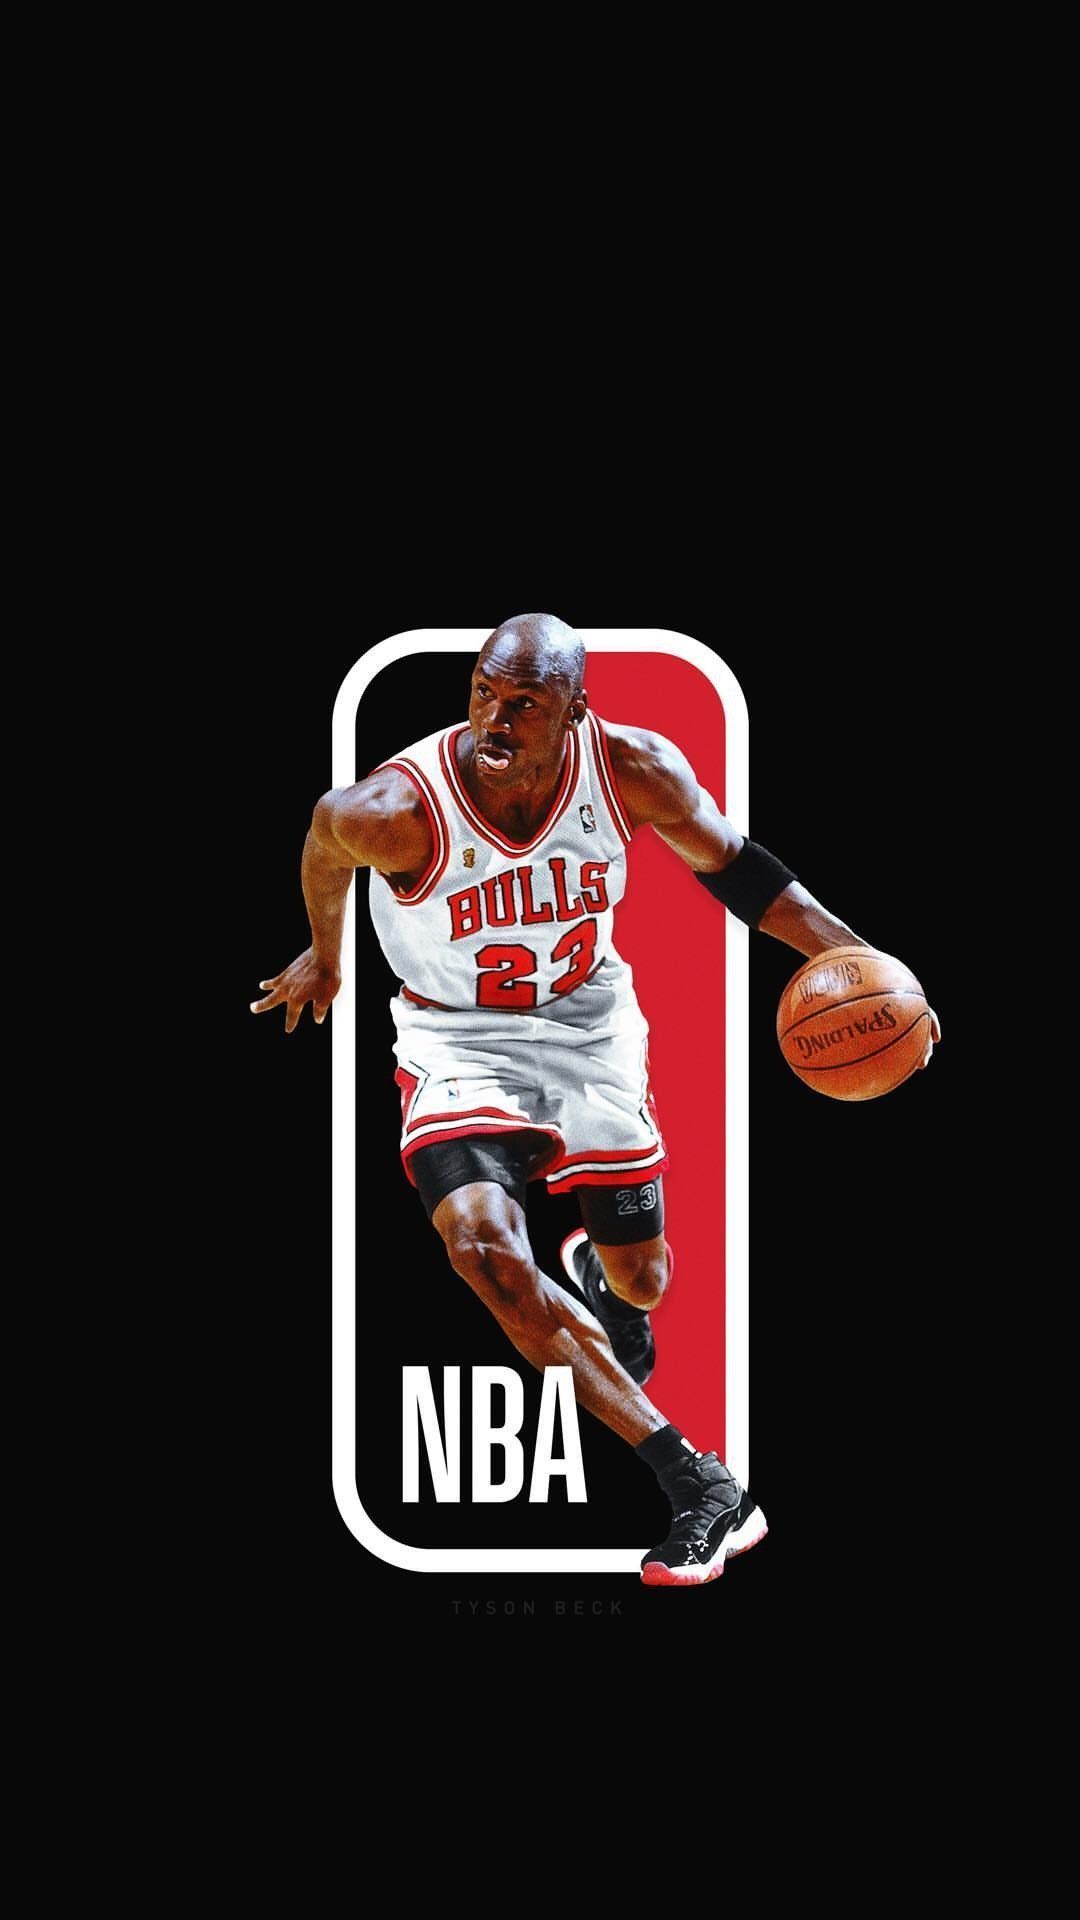 Michael Jordan Wallpapers in 2020